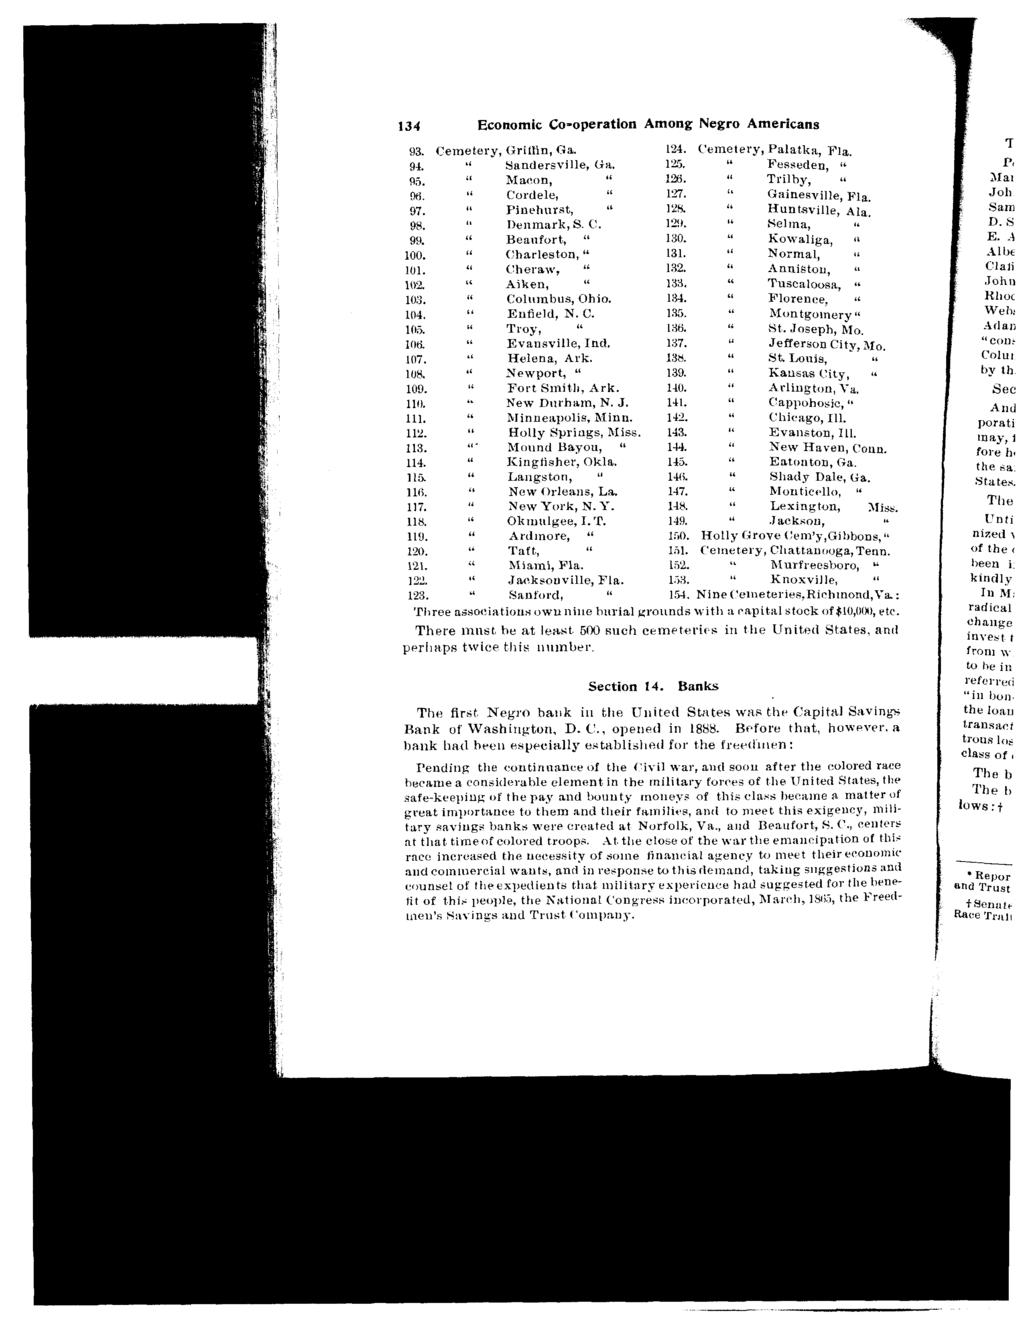 134 Economic Co-operation Among Negro Americans 93. Cemetery, Gritfin, Ga. Sandersville, Ga. hl act on, ' Cordele, L Pinehnrst, " I)enmark, S. C!. Beaufort, Charleston, " Cheraw, &' 94. 9.5. 96. 97.